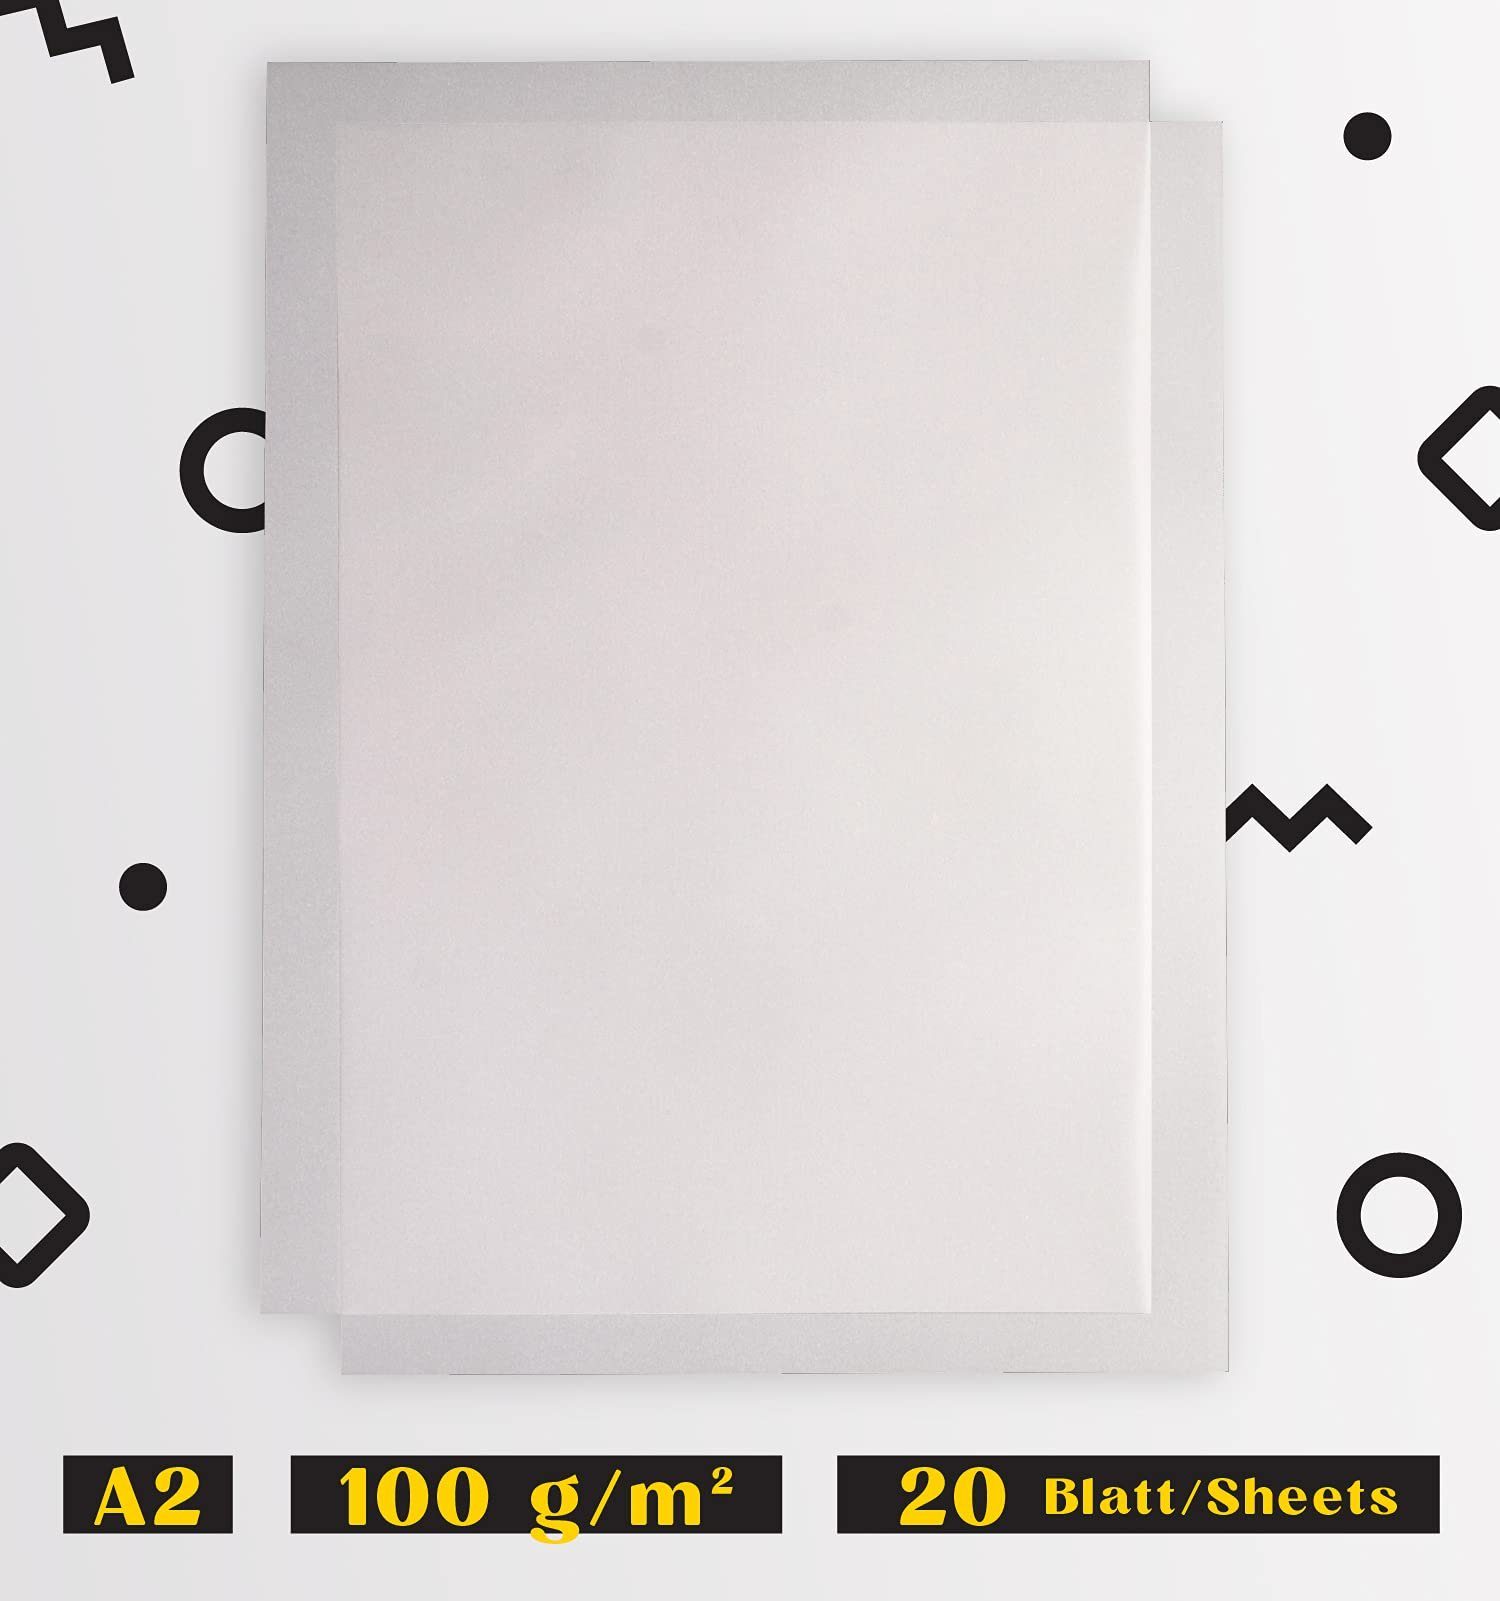 Tritart Transparentpapier 20 A2 Transparentpapier Blatt, 20 Blatt Weißes 100g/qm 100g/qm A2 Weißes DIN Transparentpapier